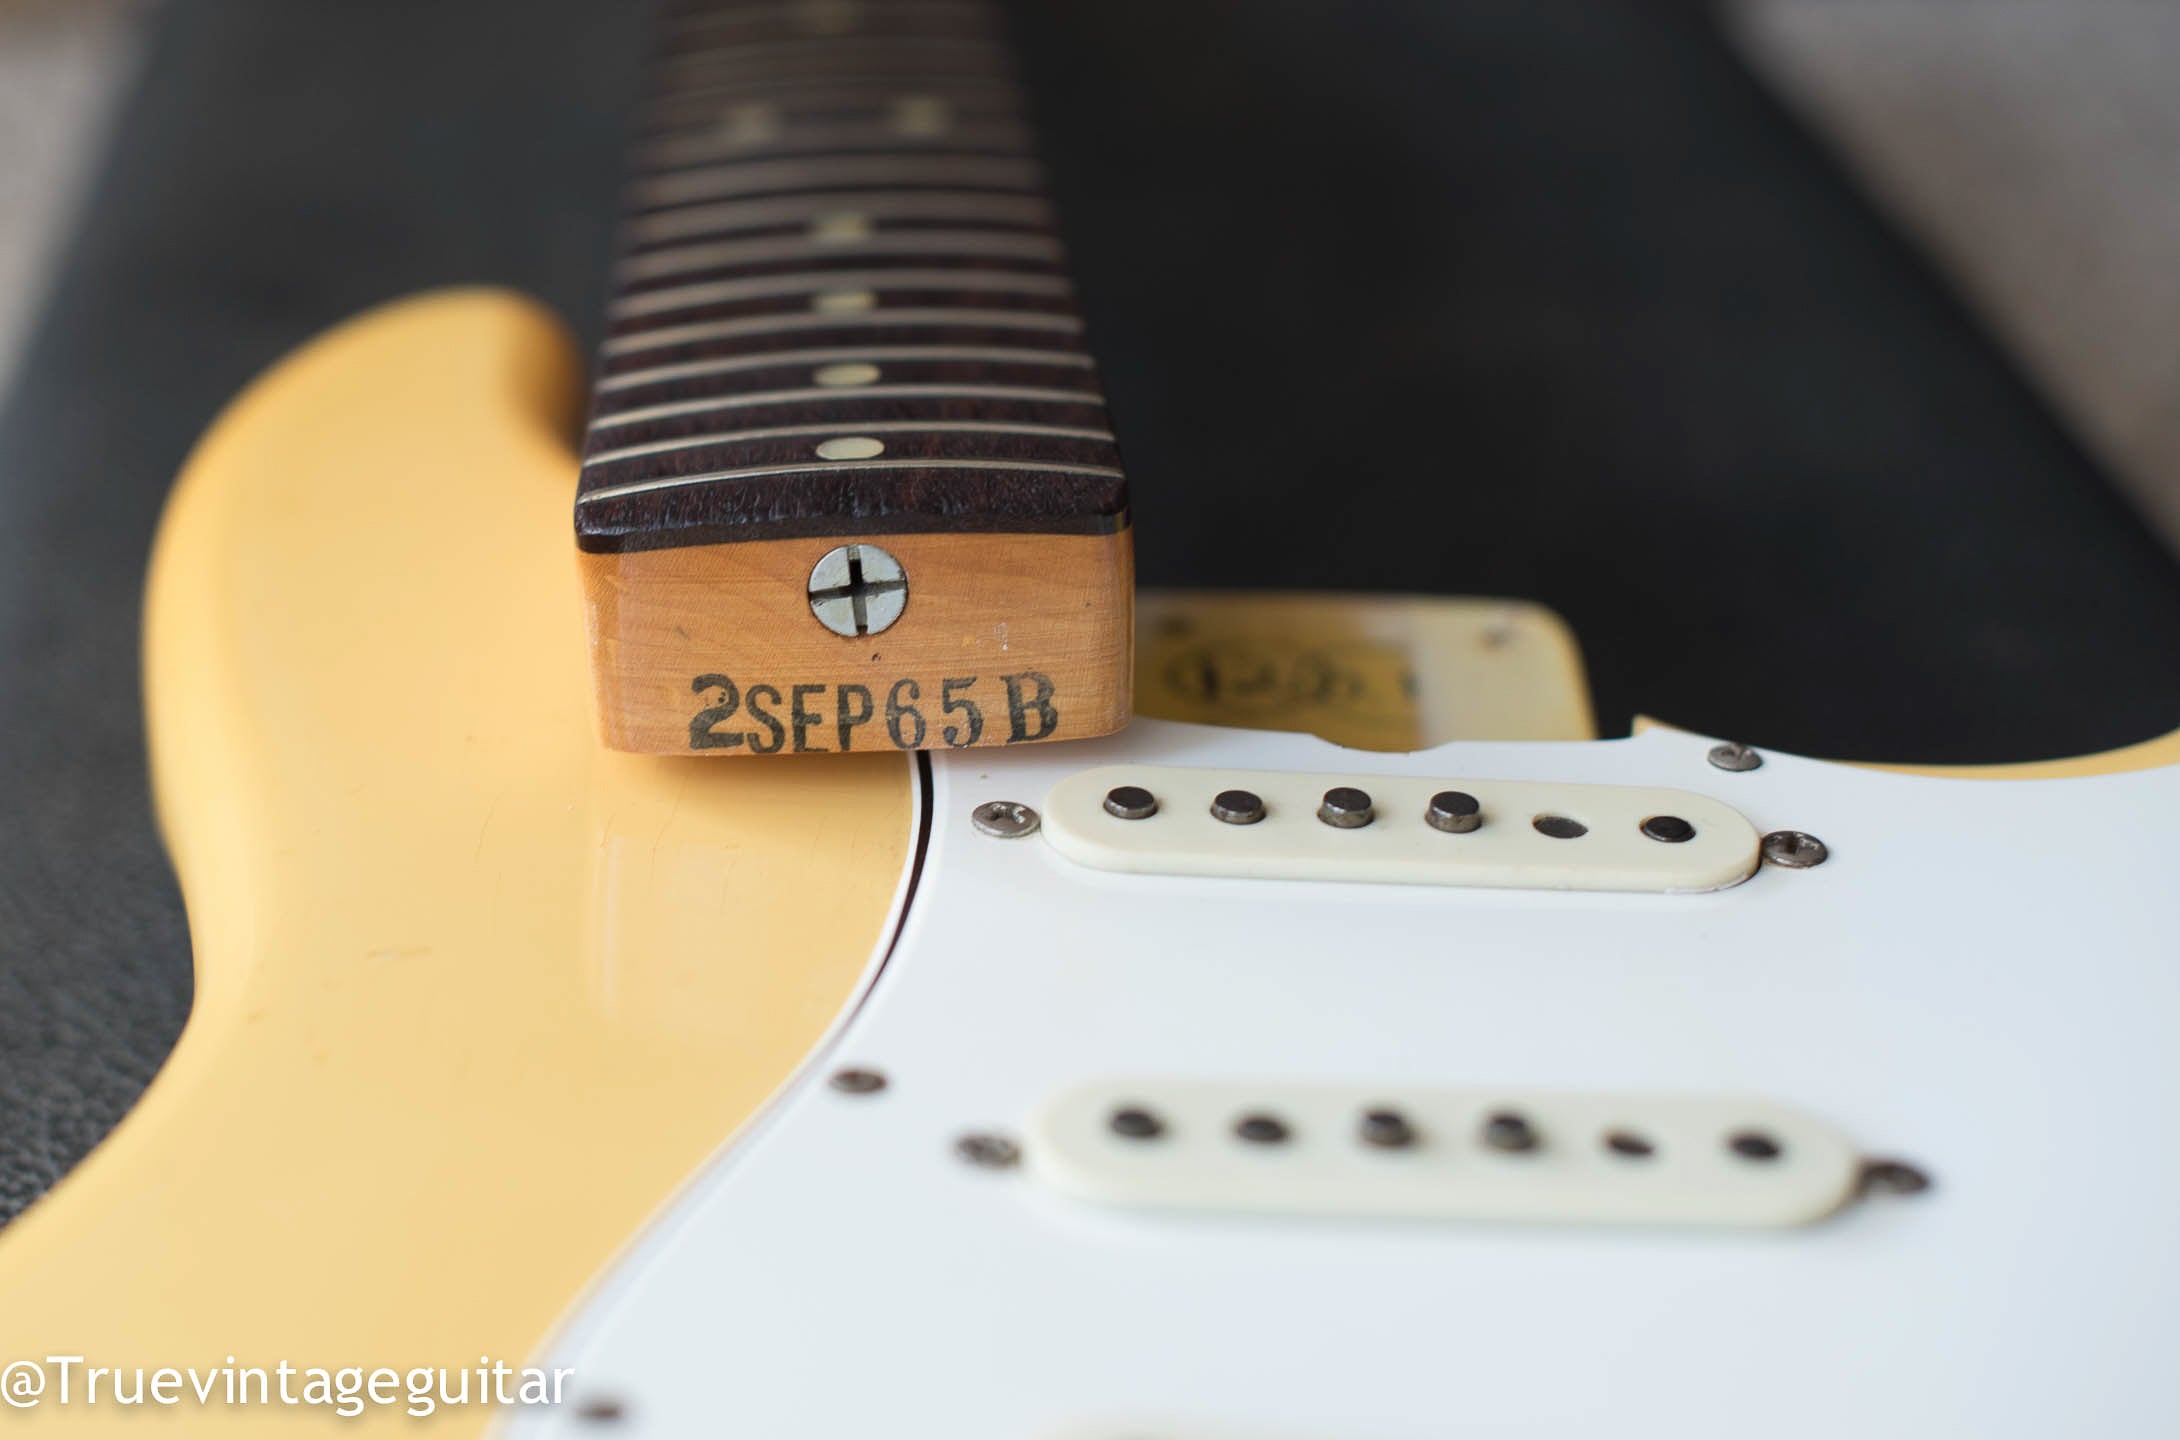 Neck heel date stamp "2SEP65B", 1965 Fender Stratocaster